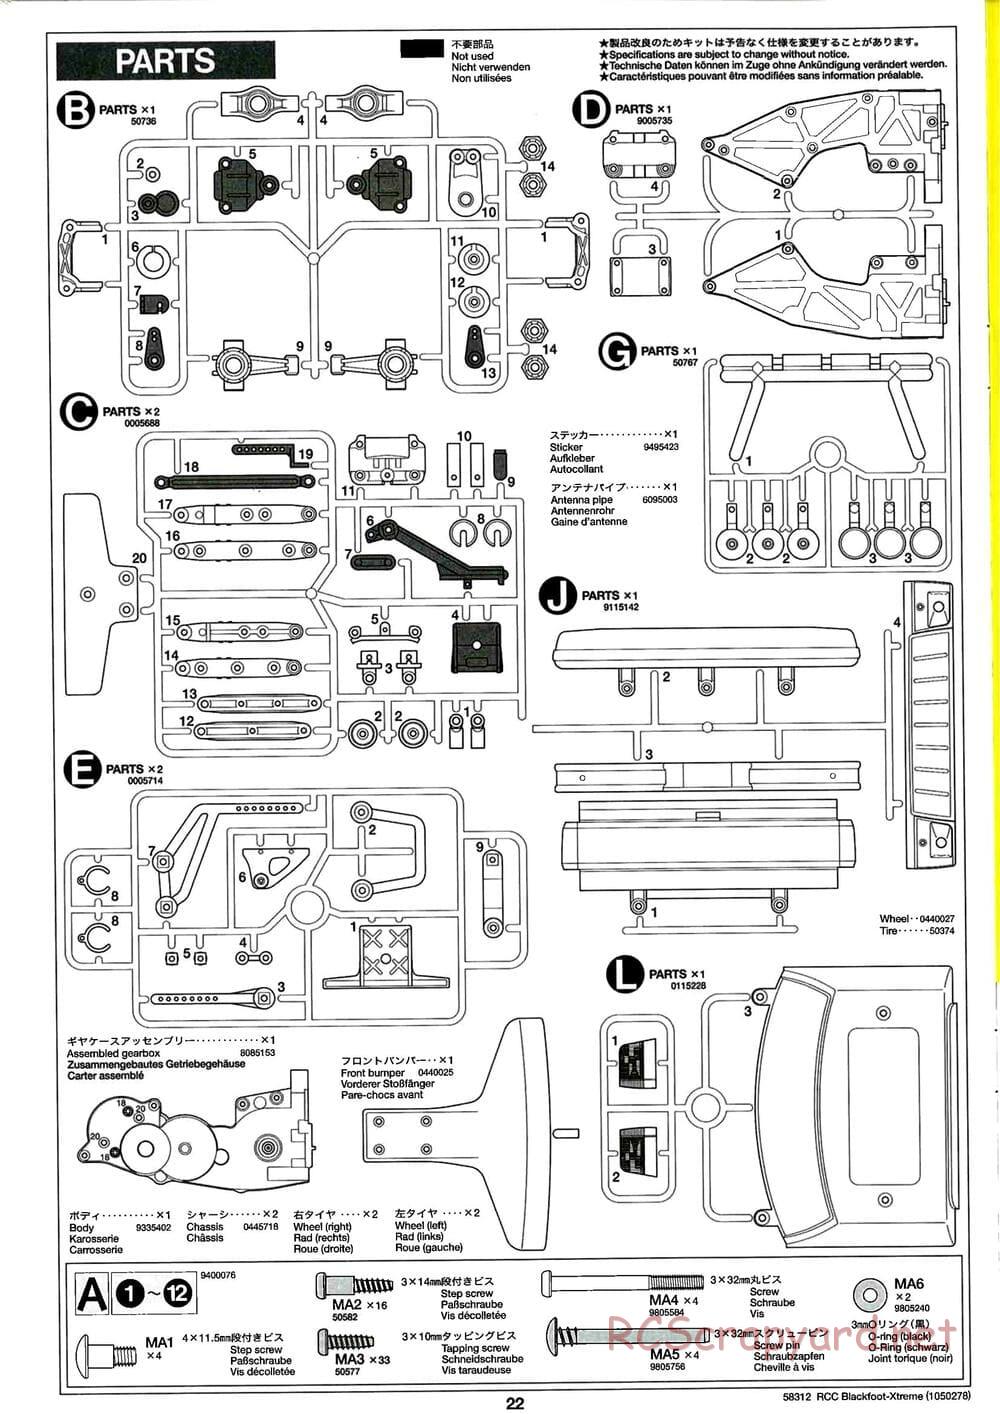 Tamiya - Blackfoot Xtreme - WT-01 Chassis - Manual - Page 22